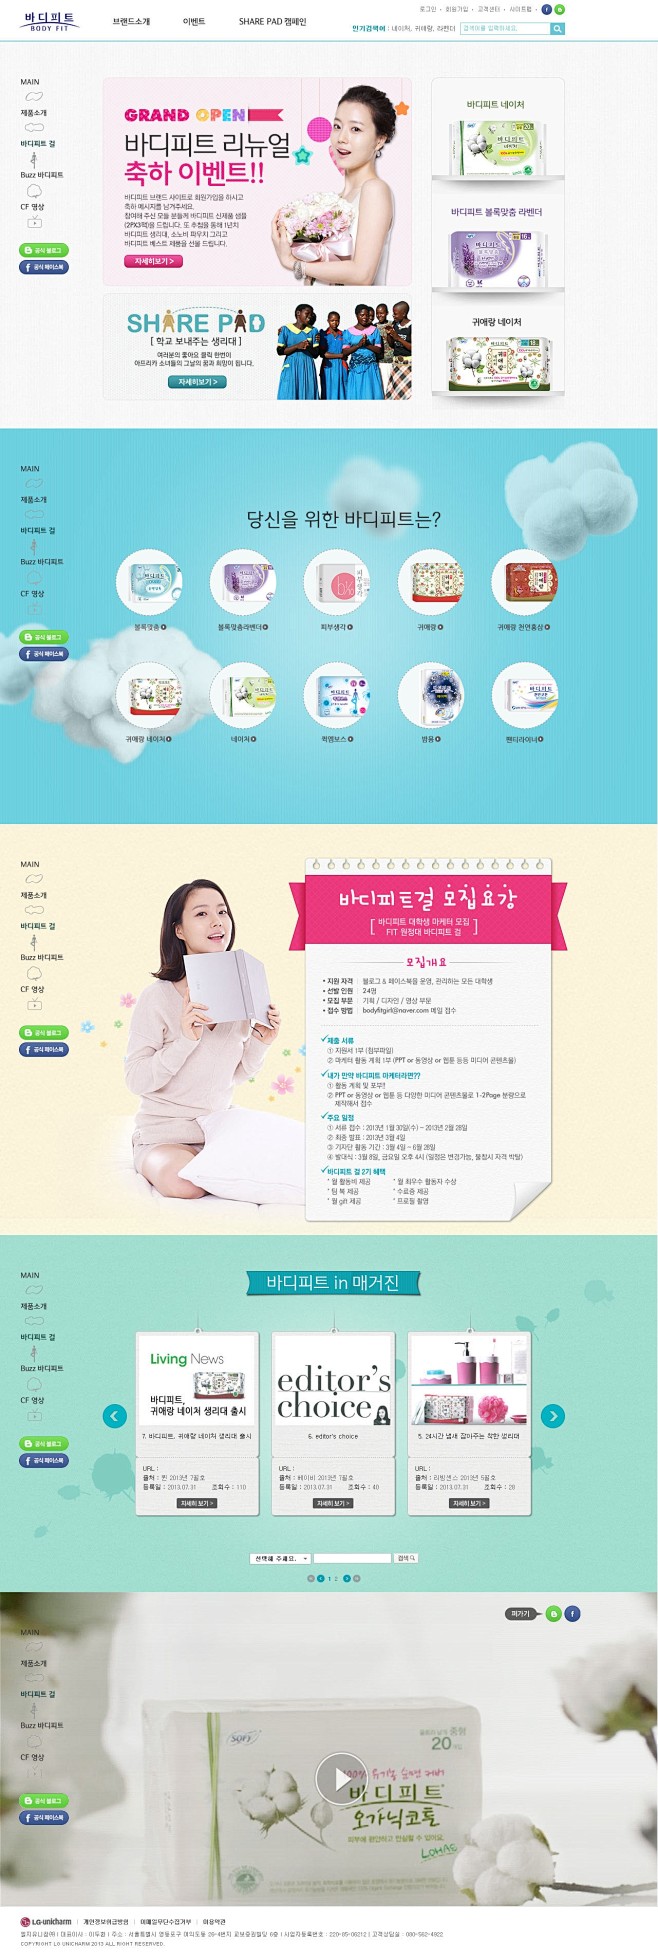 韩国女性卫生棉产品酷站。酷站截图欣赏-编...